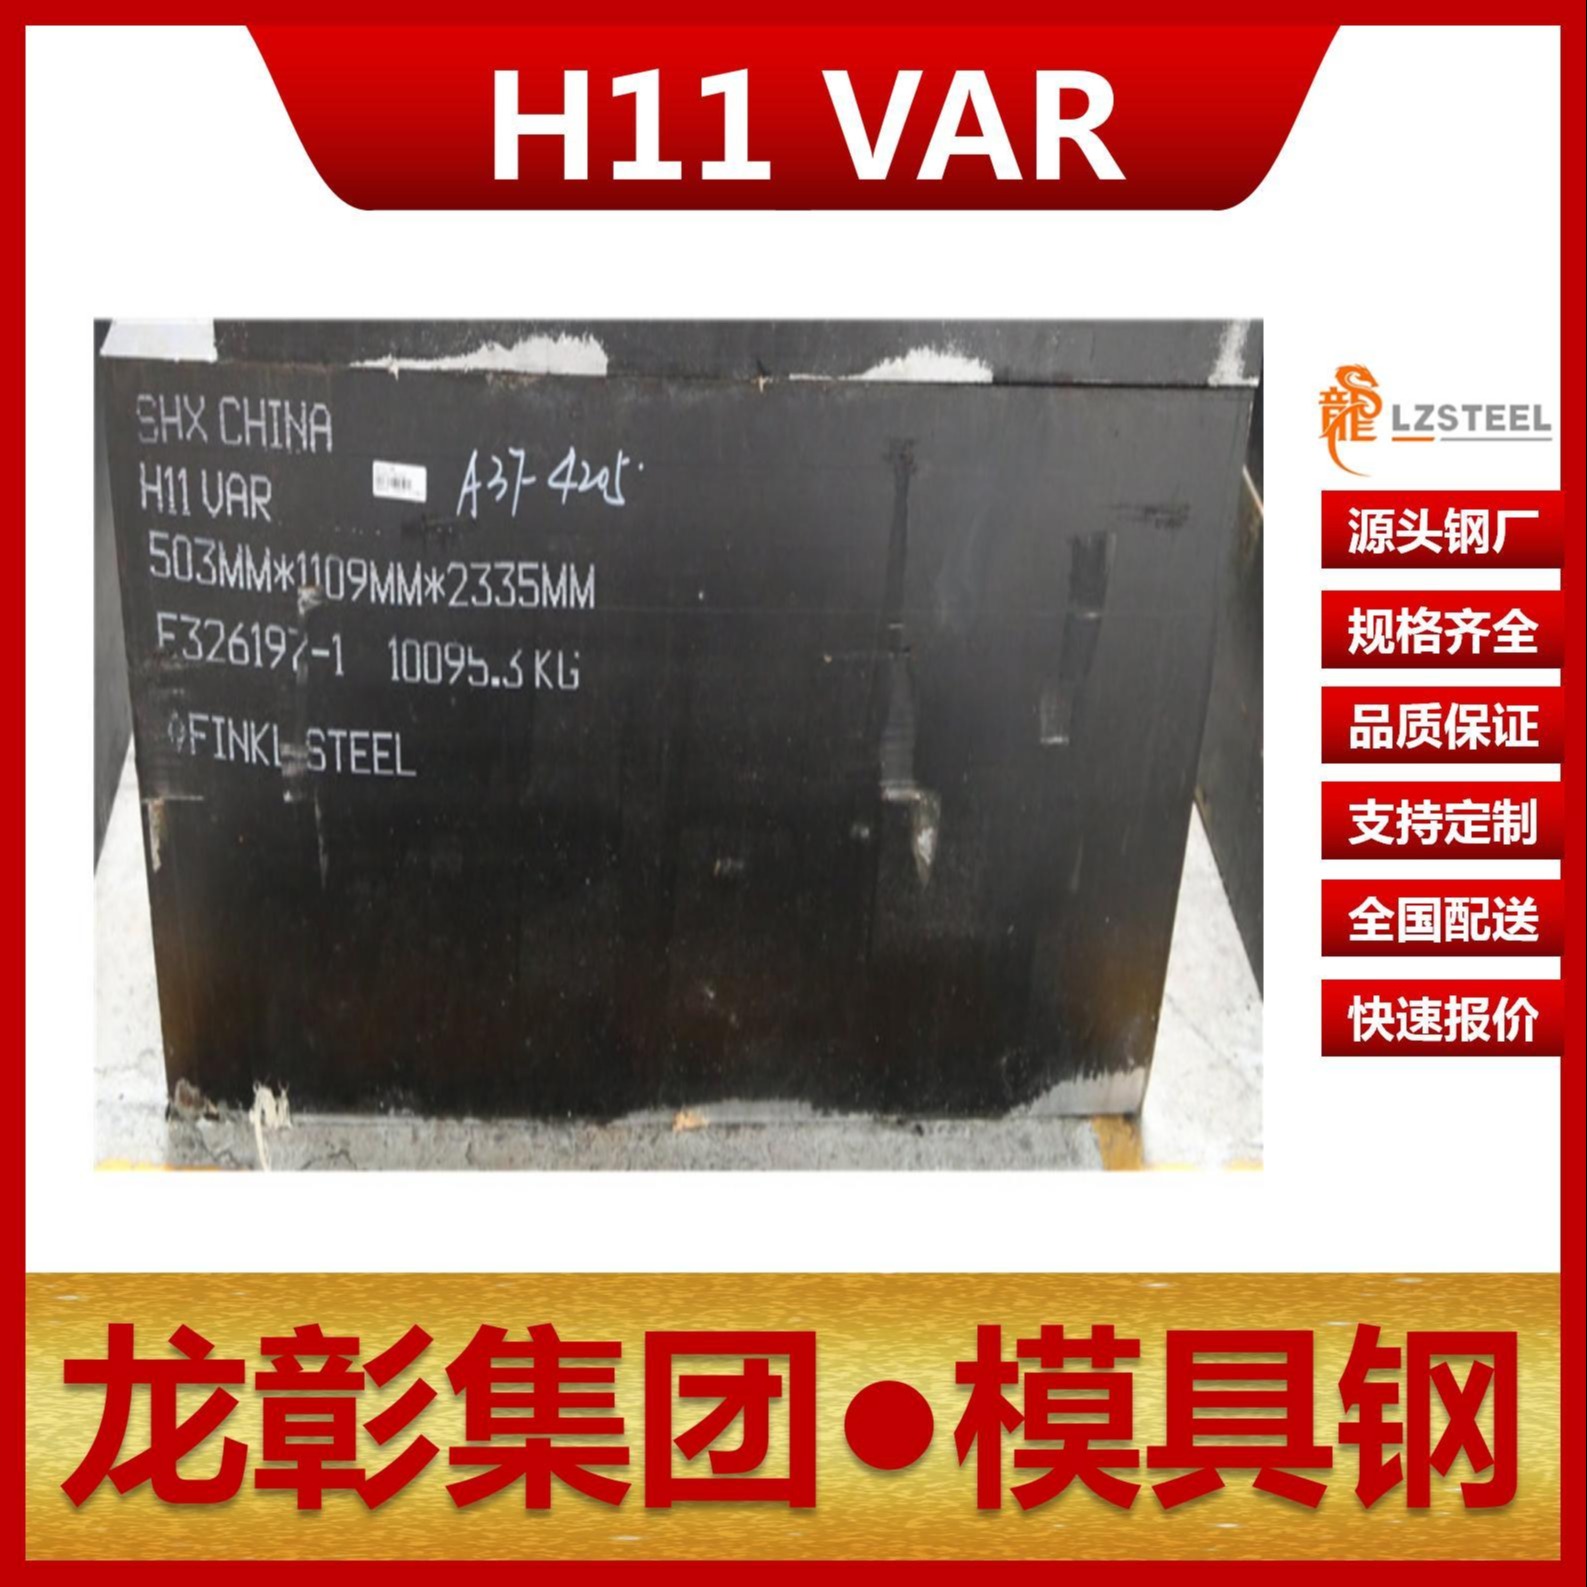 芬可乐H11 VAR模具钢现货批零 进口H11 VAR扁钢圆棒热作模具钢龙彰集团